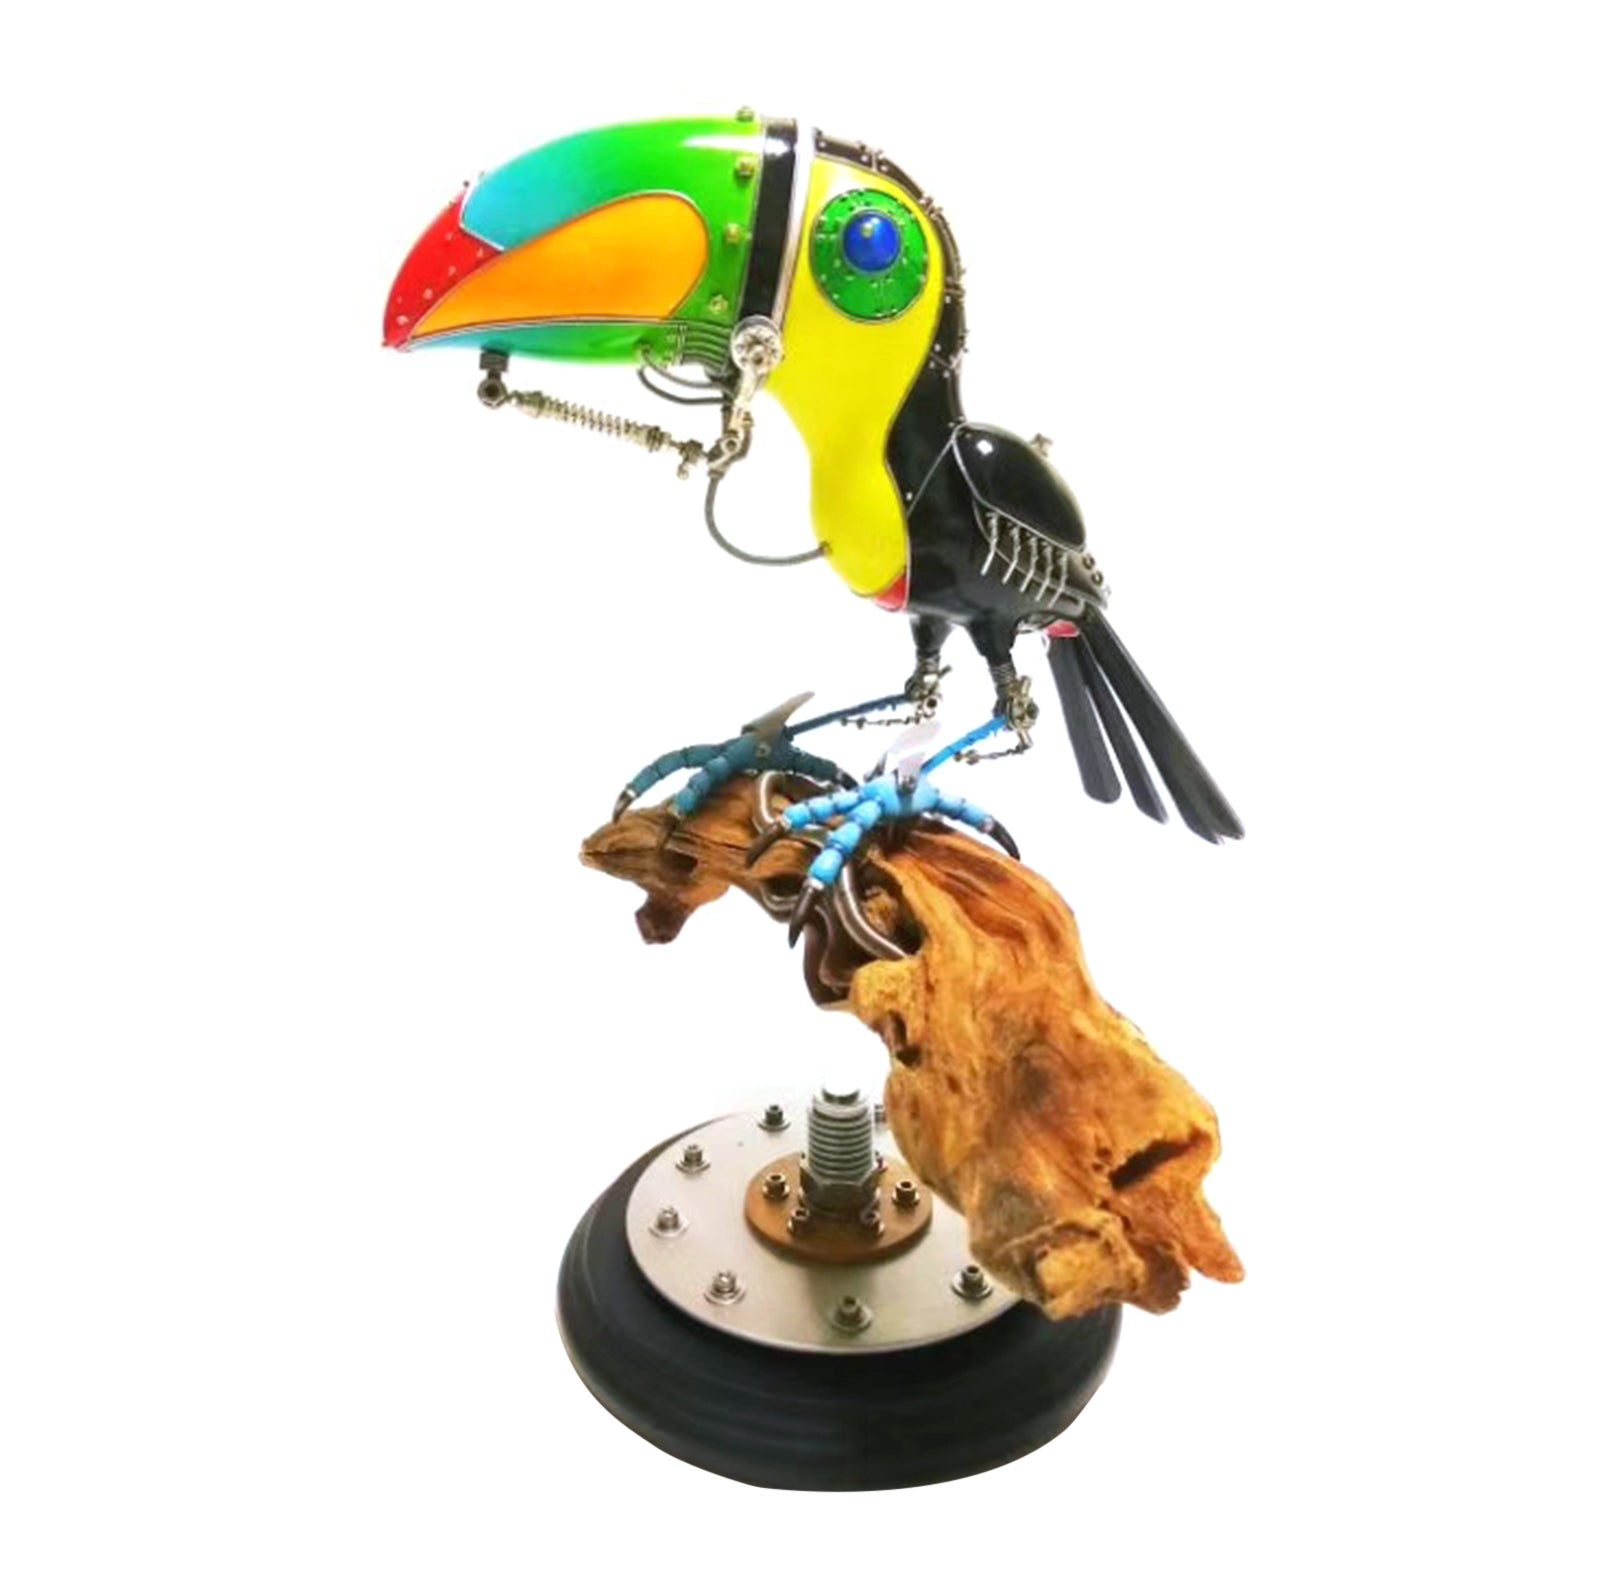 3D Metal Steampunk Toucan Bird Animals Sculpture  Assembled Model Kits Collection